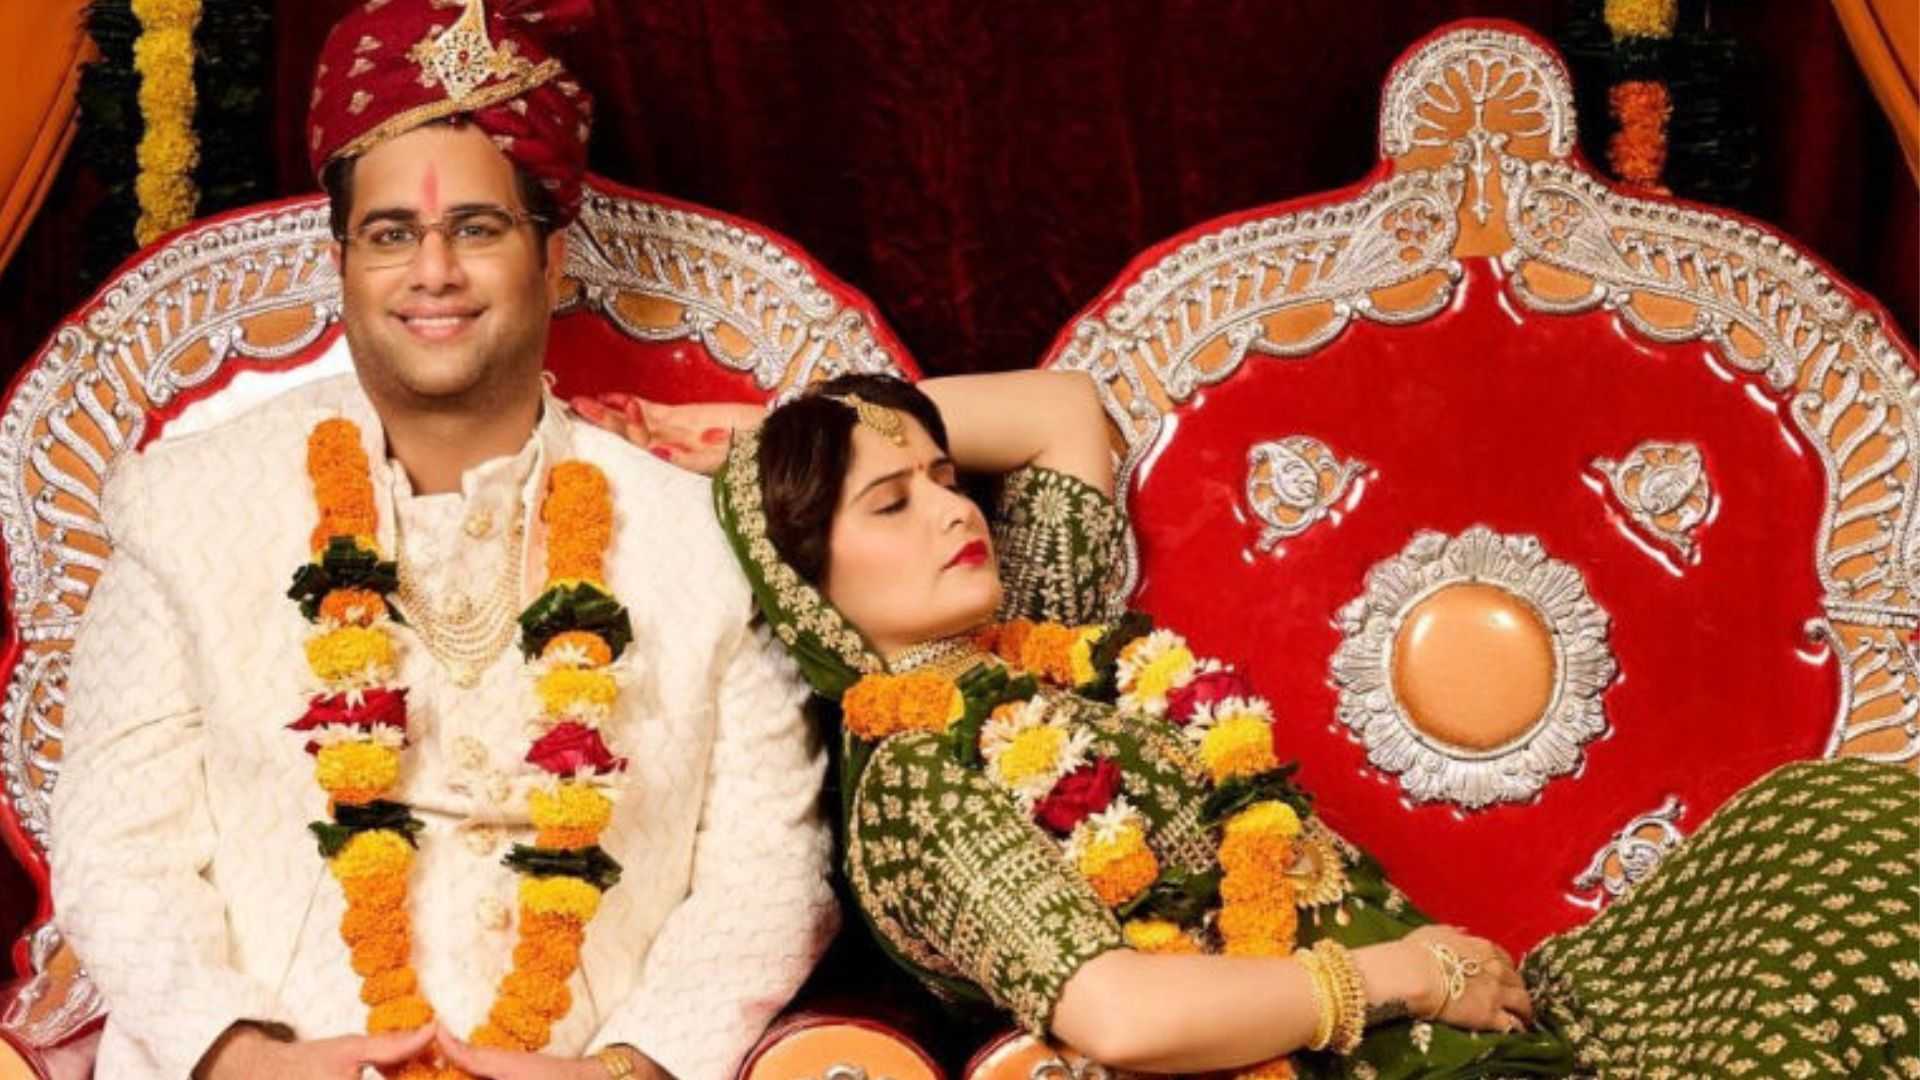 सिद्धार्थ शुक्ला की एक्स गर्लफ्रेंड आरती सिंह ने चोरीछिपे रचाई शादी, दूल्हा बने राजीव अदातिया?